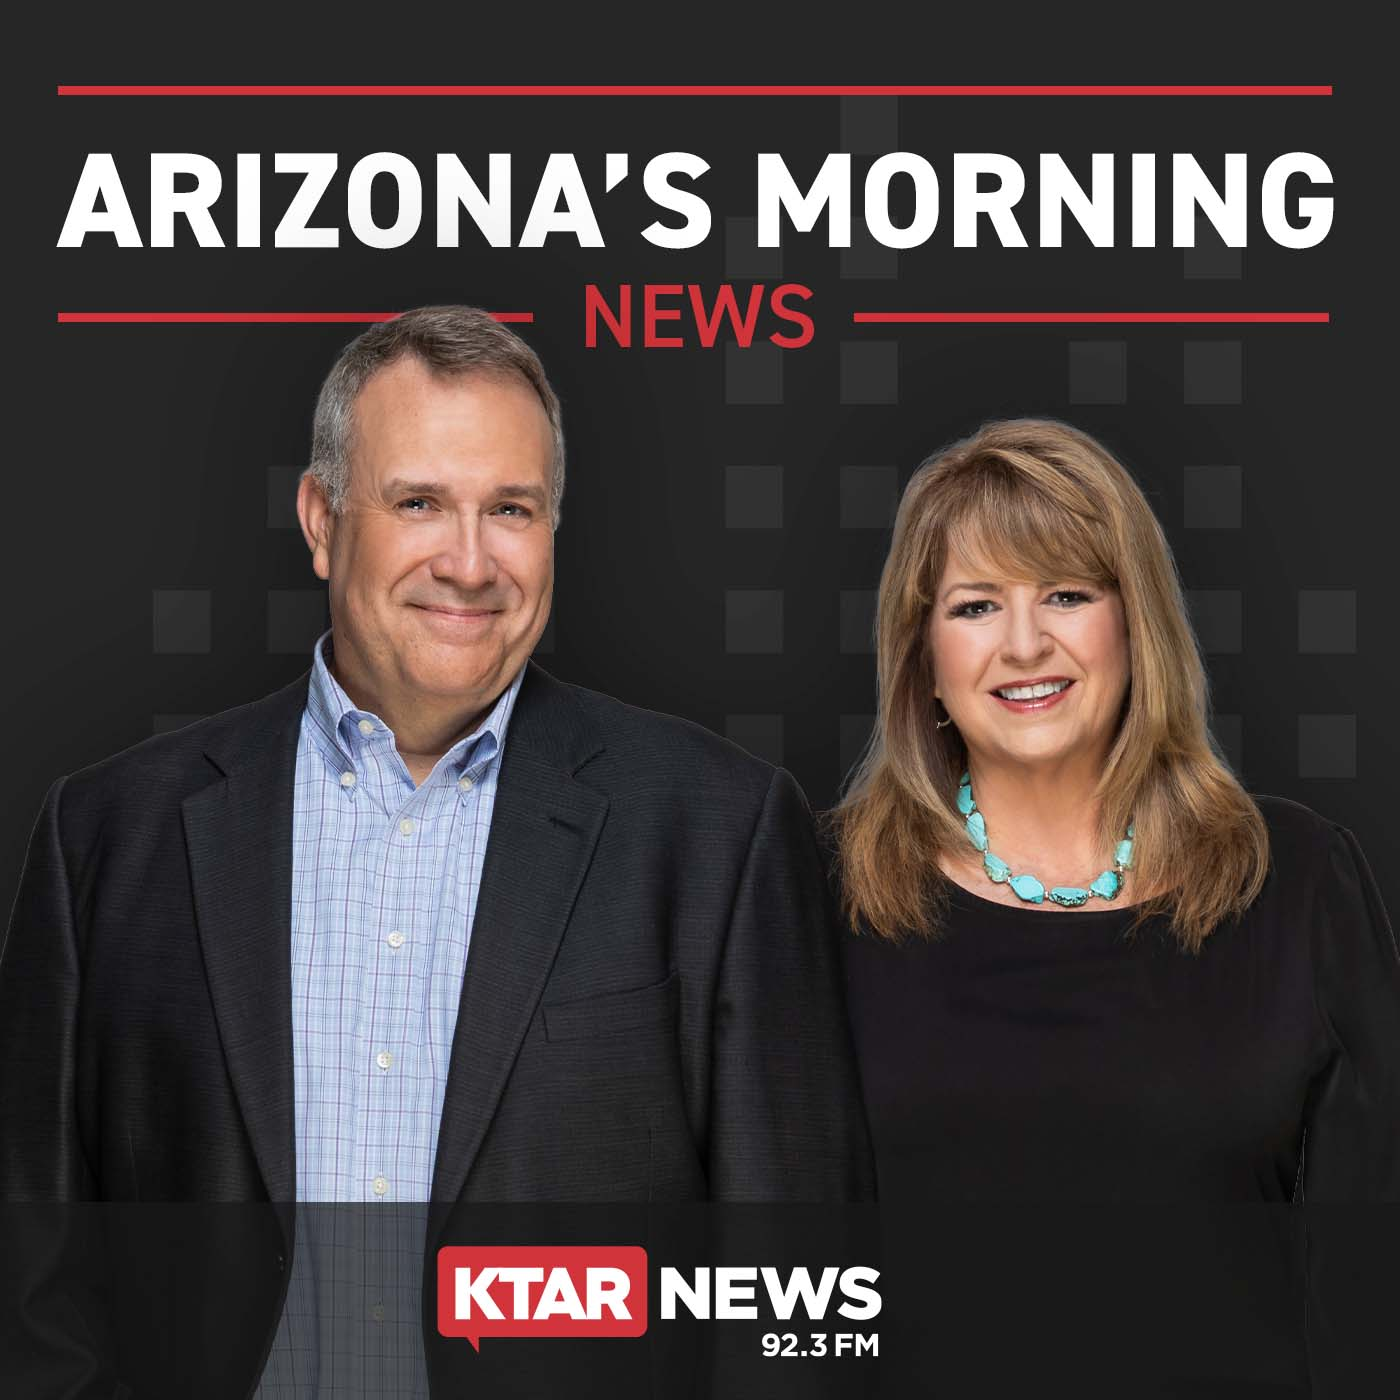 Will Arizona's property taxes rise?